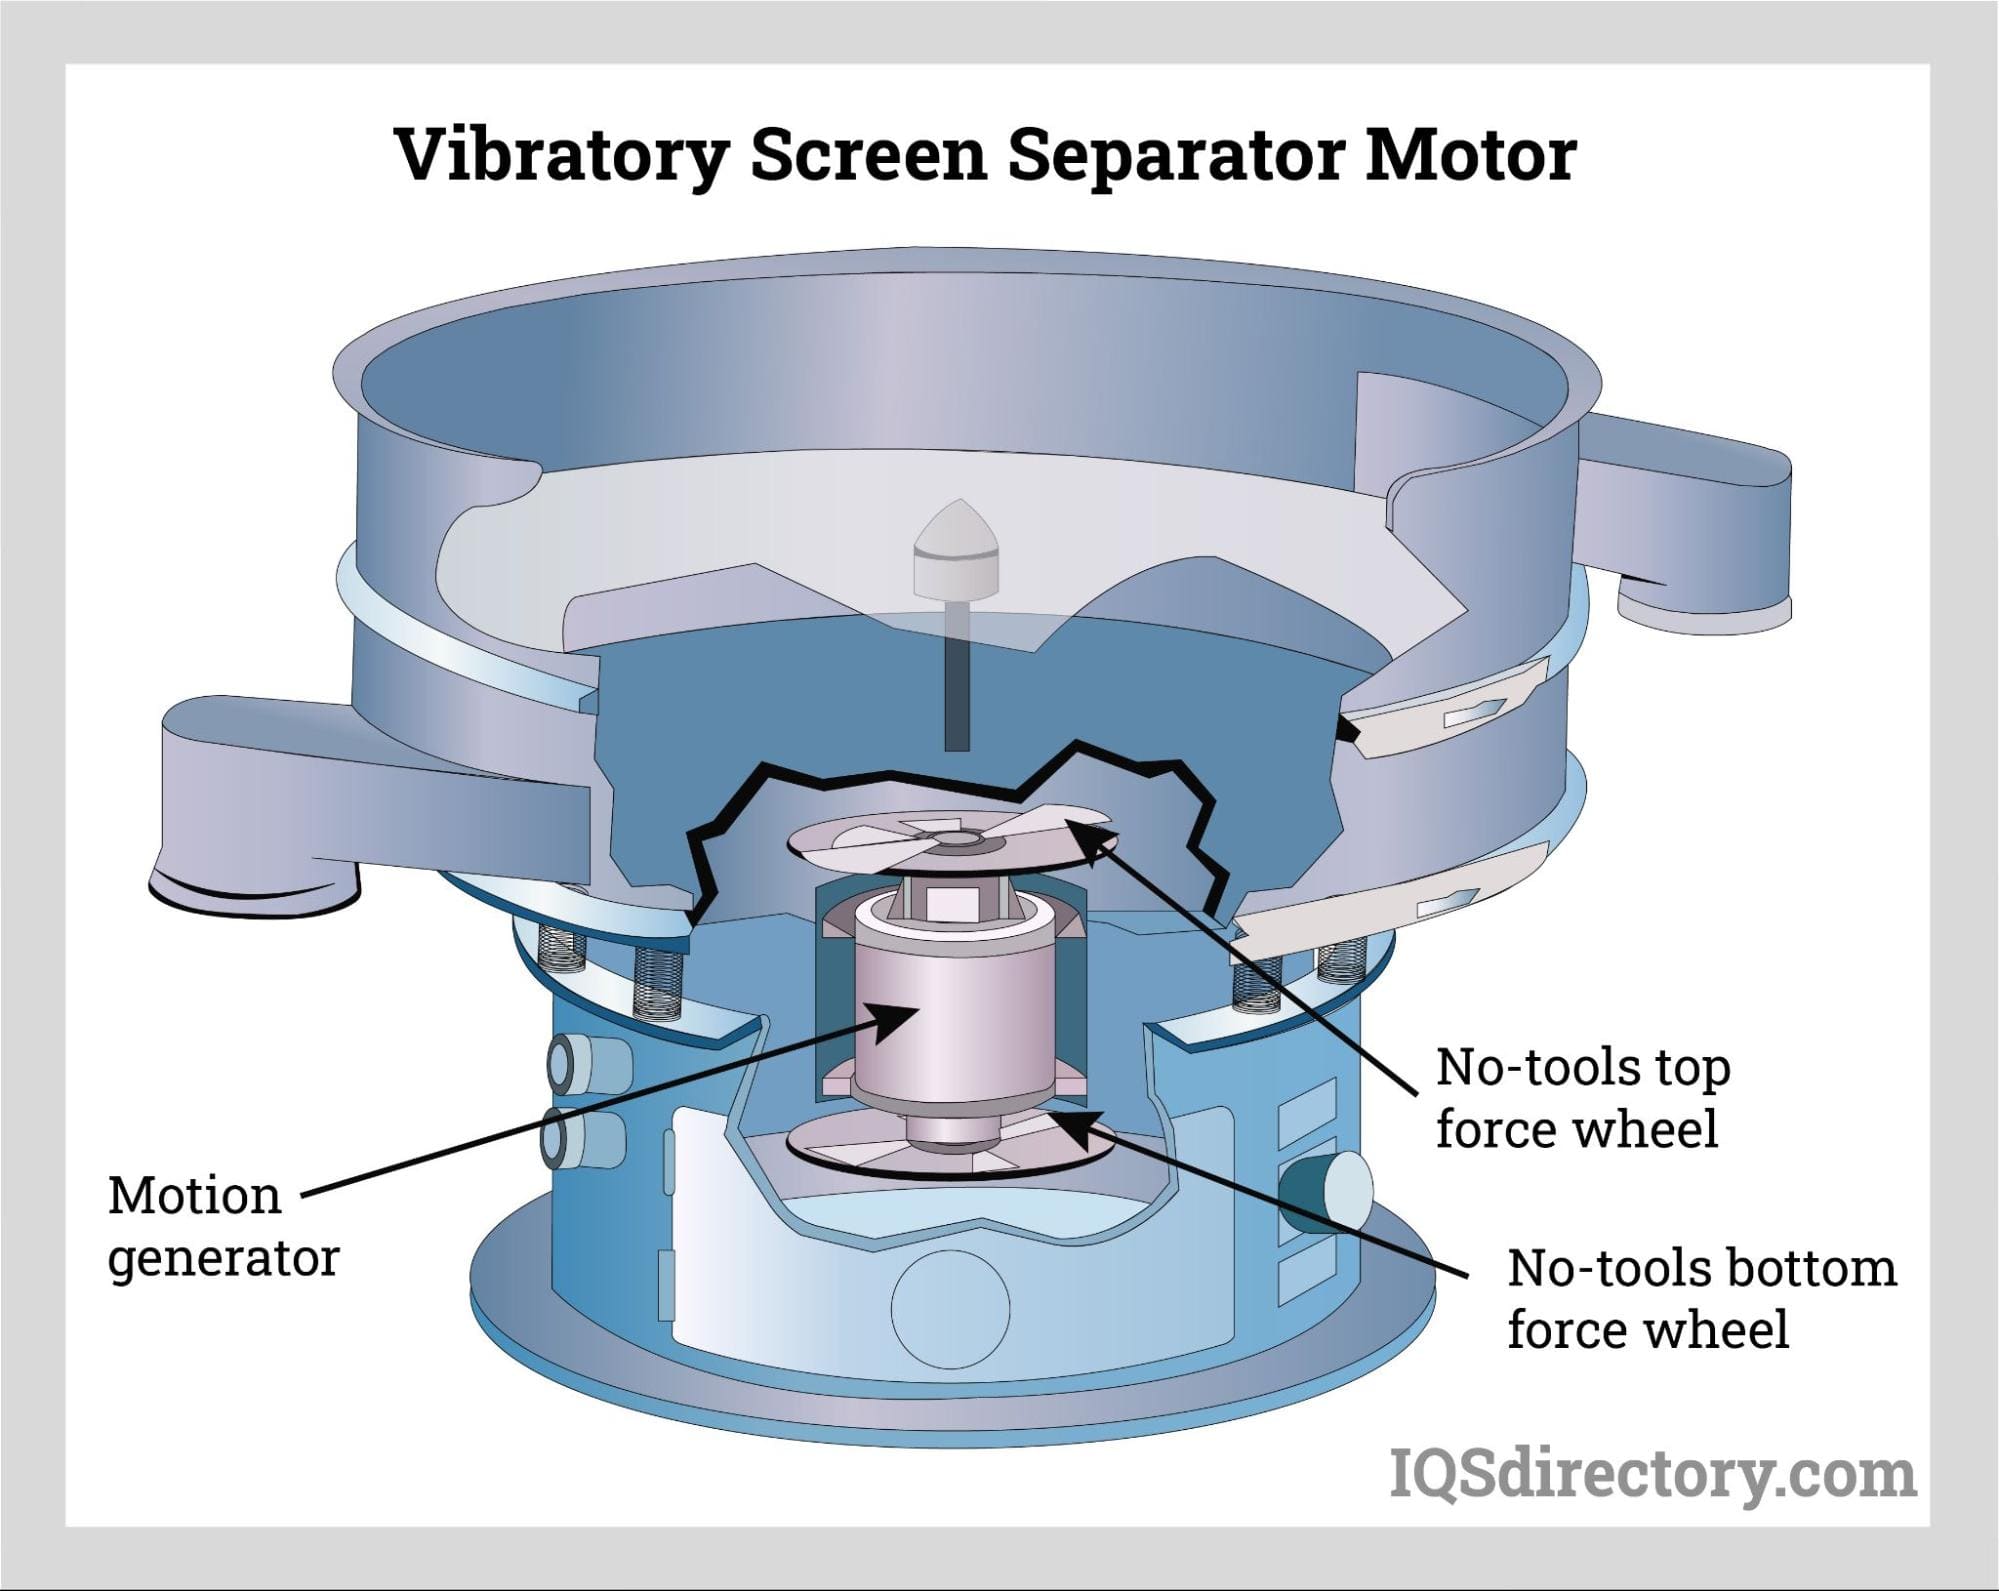 Vibratory Screen Separator Motor